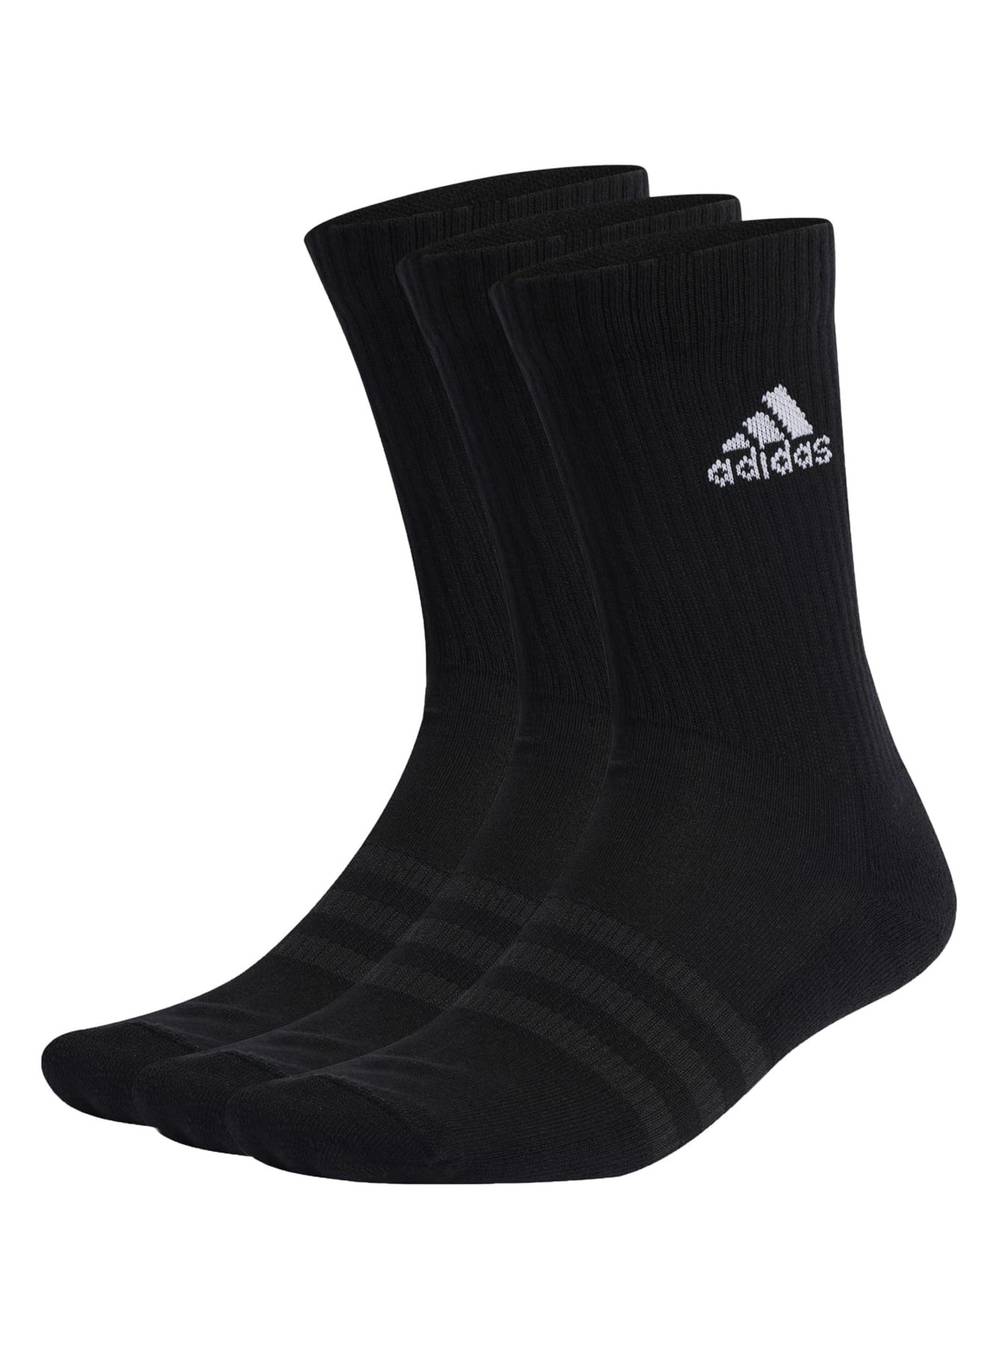 Adidas pack 3 calcetín design urbana (color: negro. talla: s)